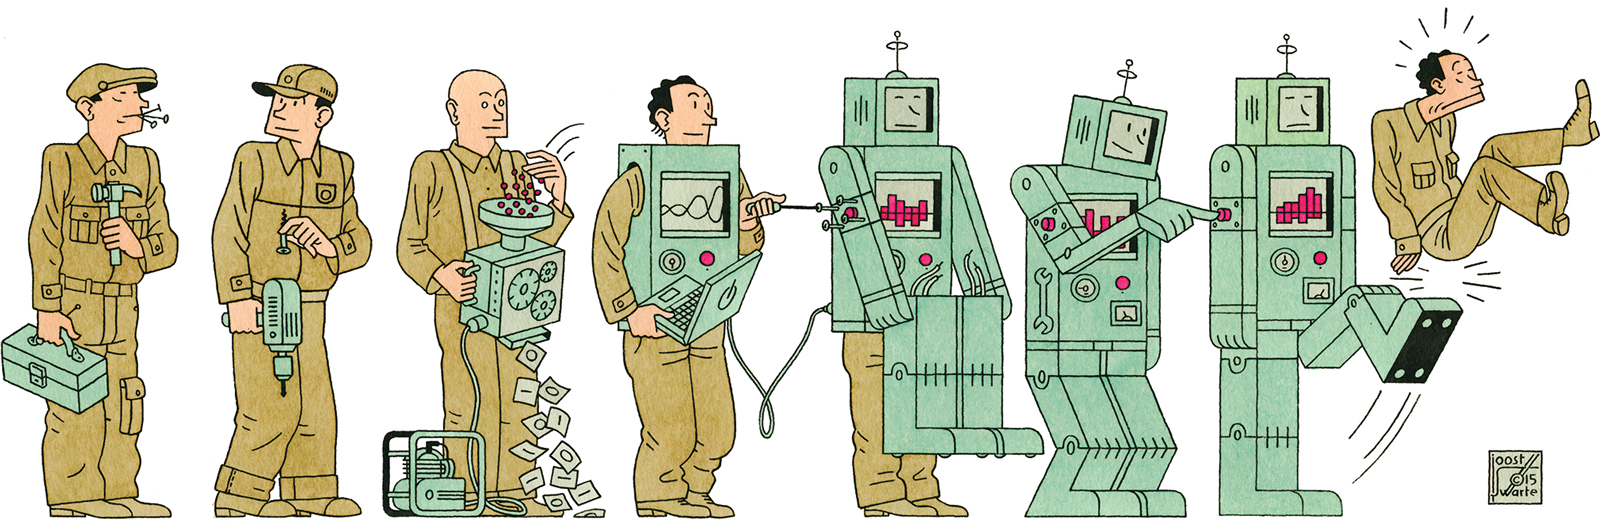 工人被机器人取代.jpg